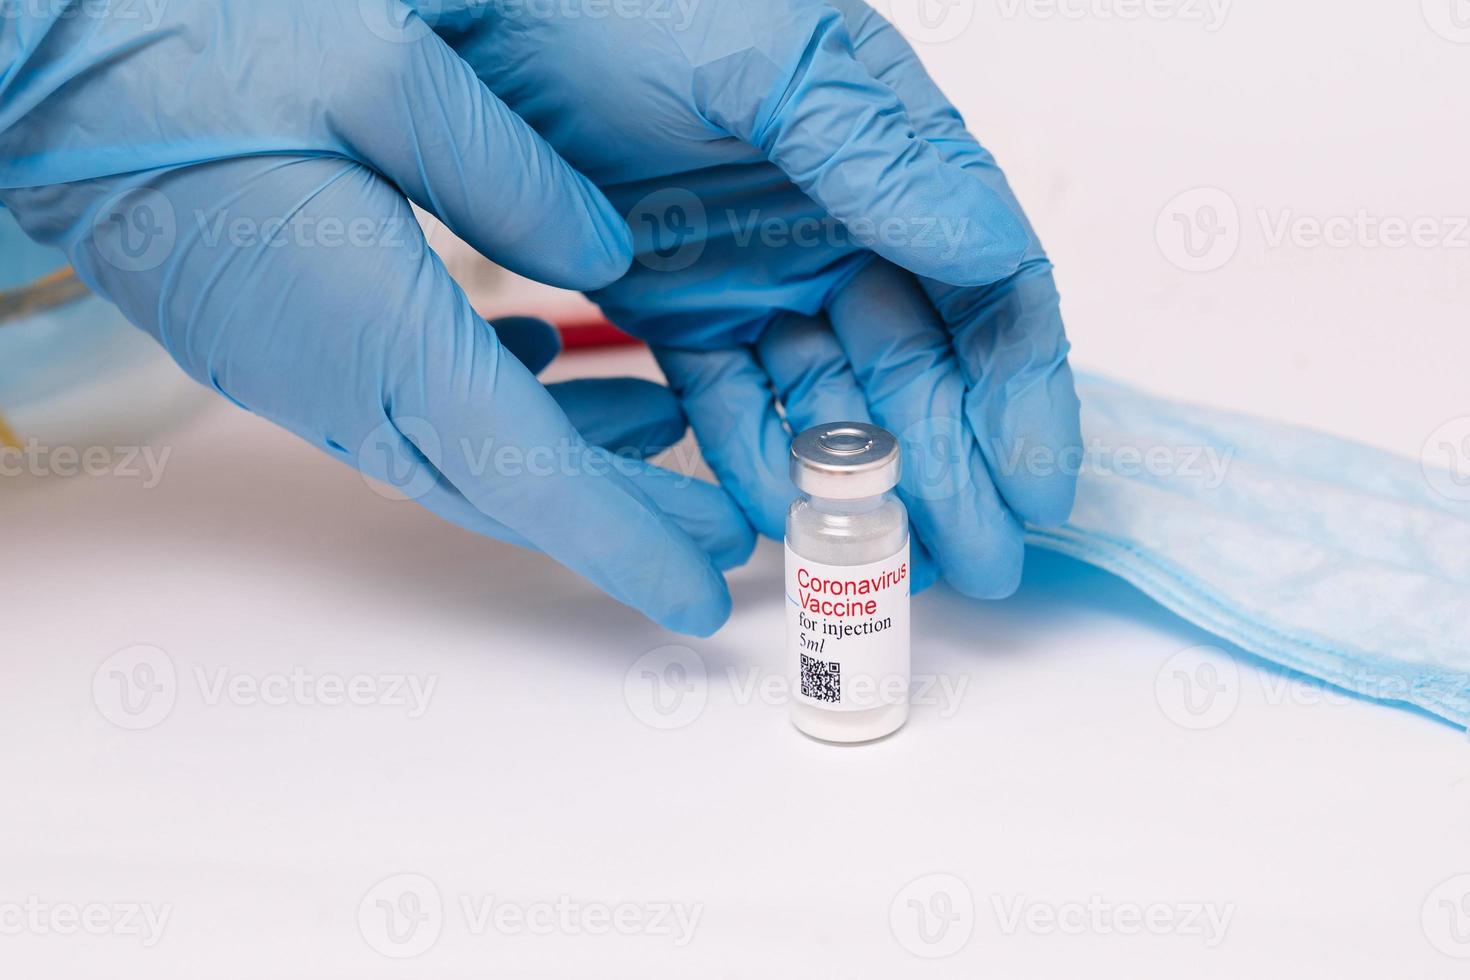 vacuna para el coronavirus. médico con una vacuna. manos sosteniendo una ampolla de vacuna contra el coronavirus, covid-19 foto